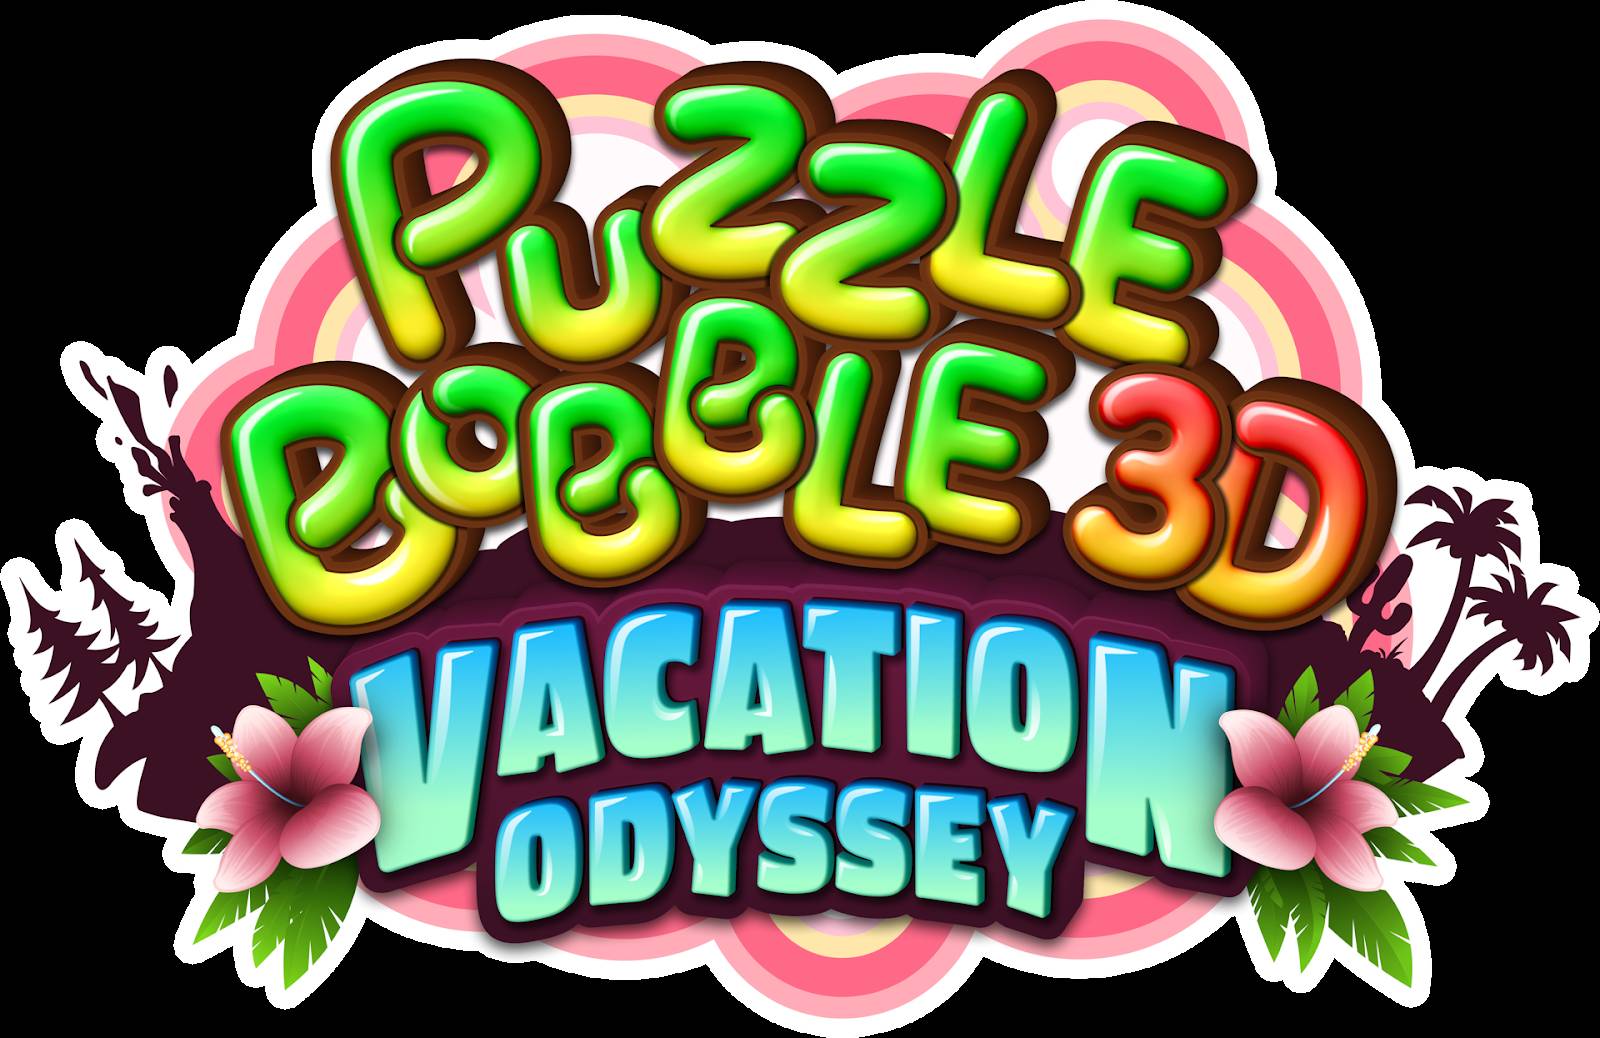 Puzzle Bobble 3D: Vacation Odyssey aperti i preordini